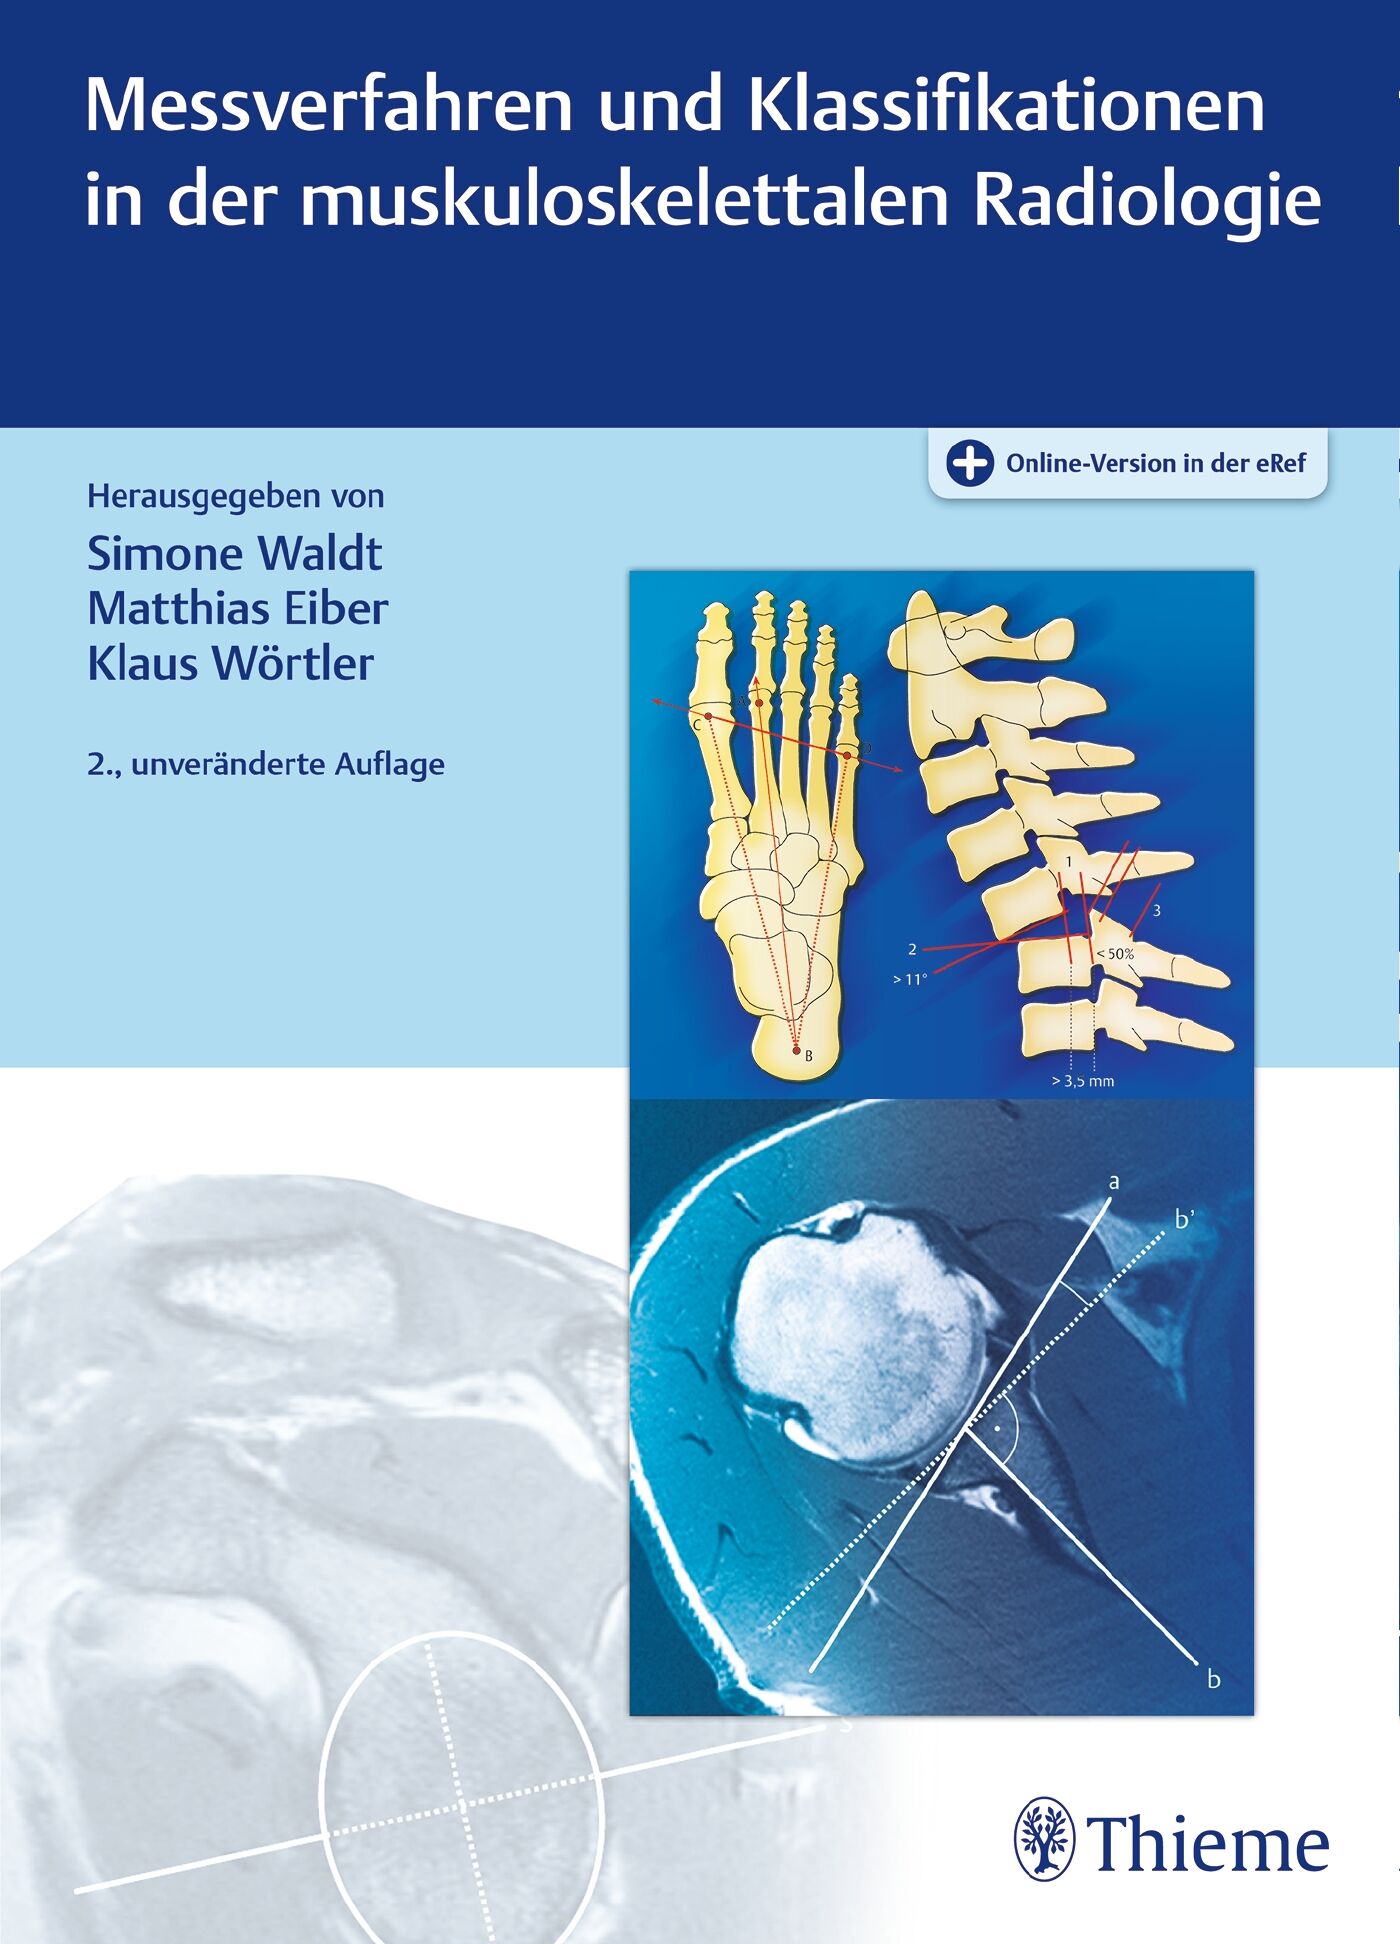 Messverfahren und Klassifikationen in der muskuloskelettalen Radiologie, 9783132415133